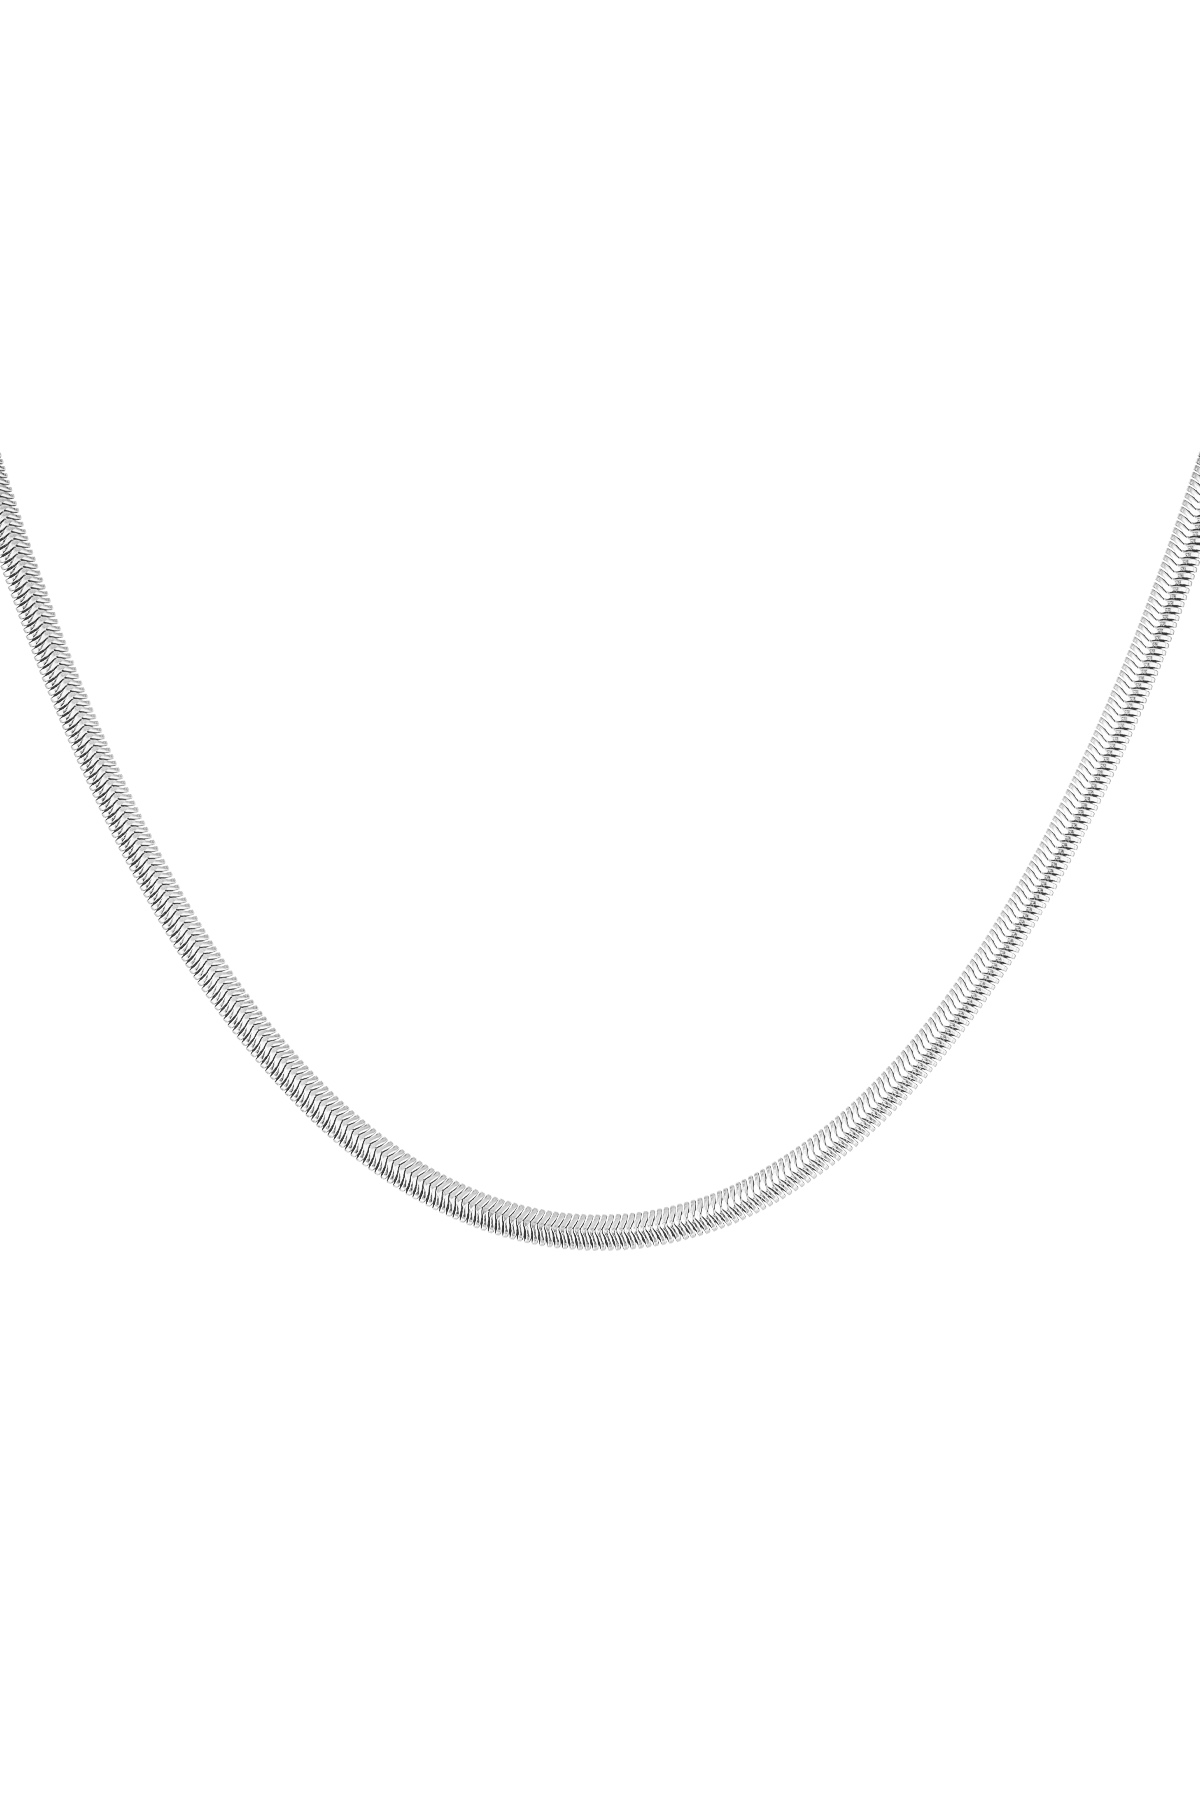 Halskette flach mit Aufdruck - Silber - 4,0MM h5 